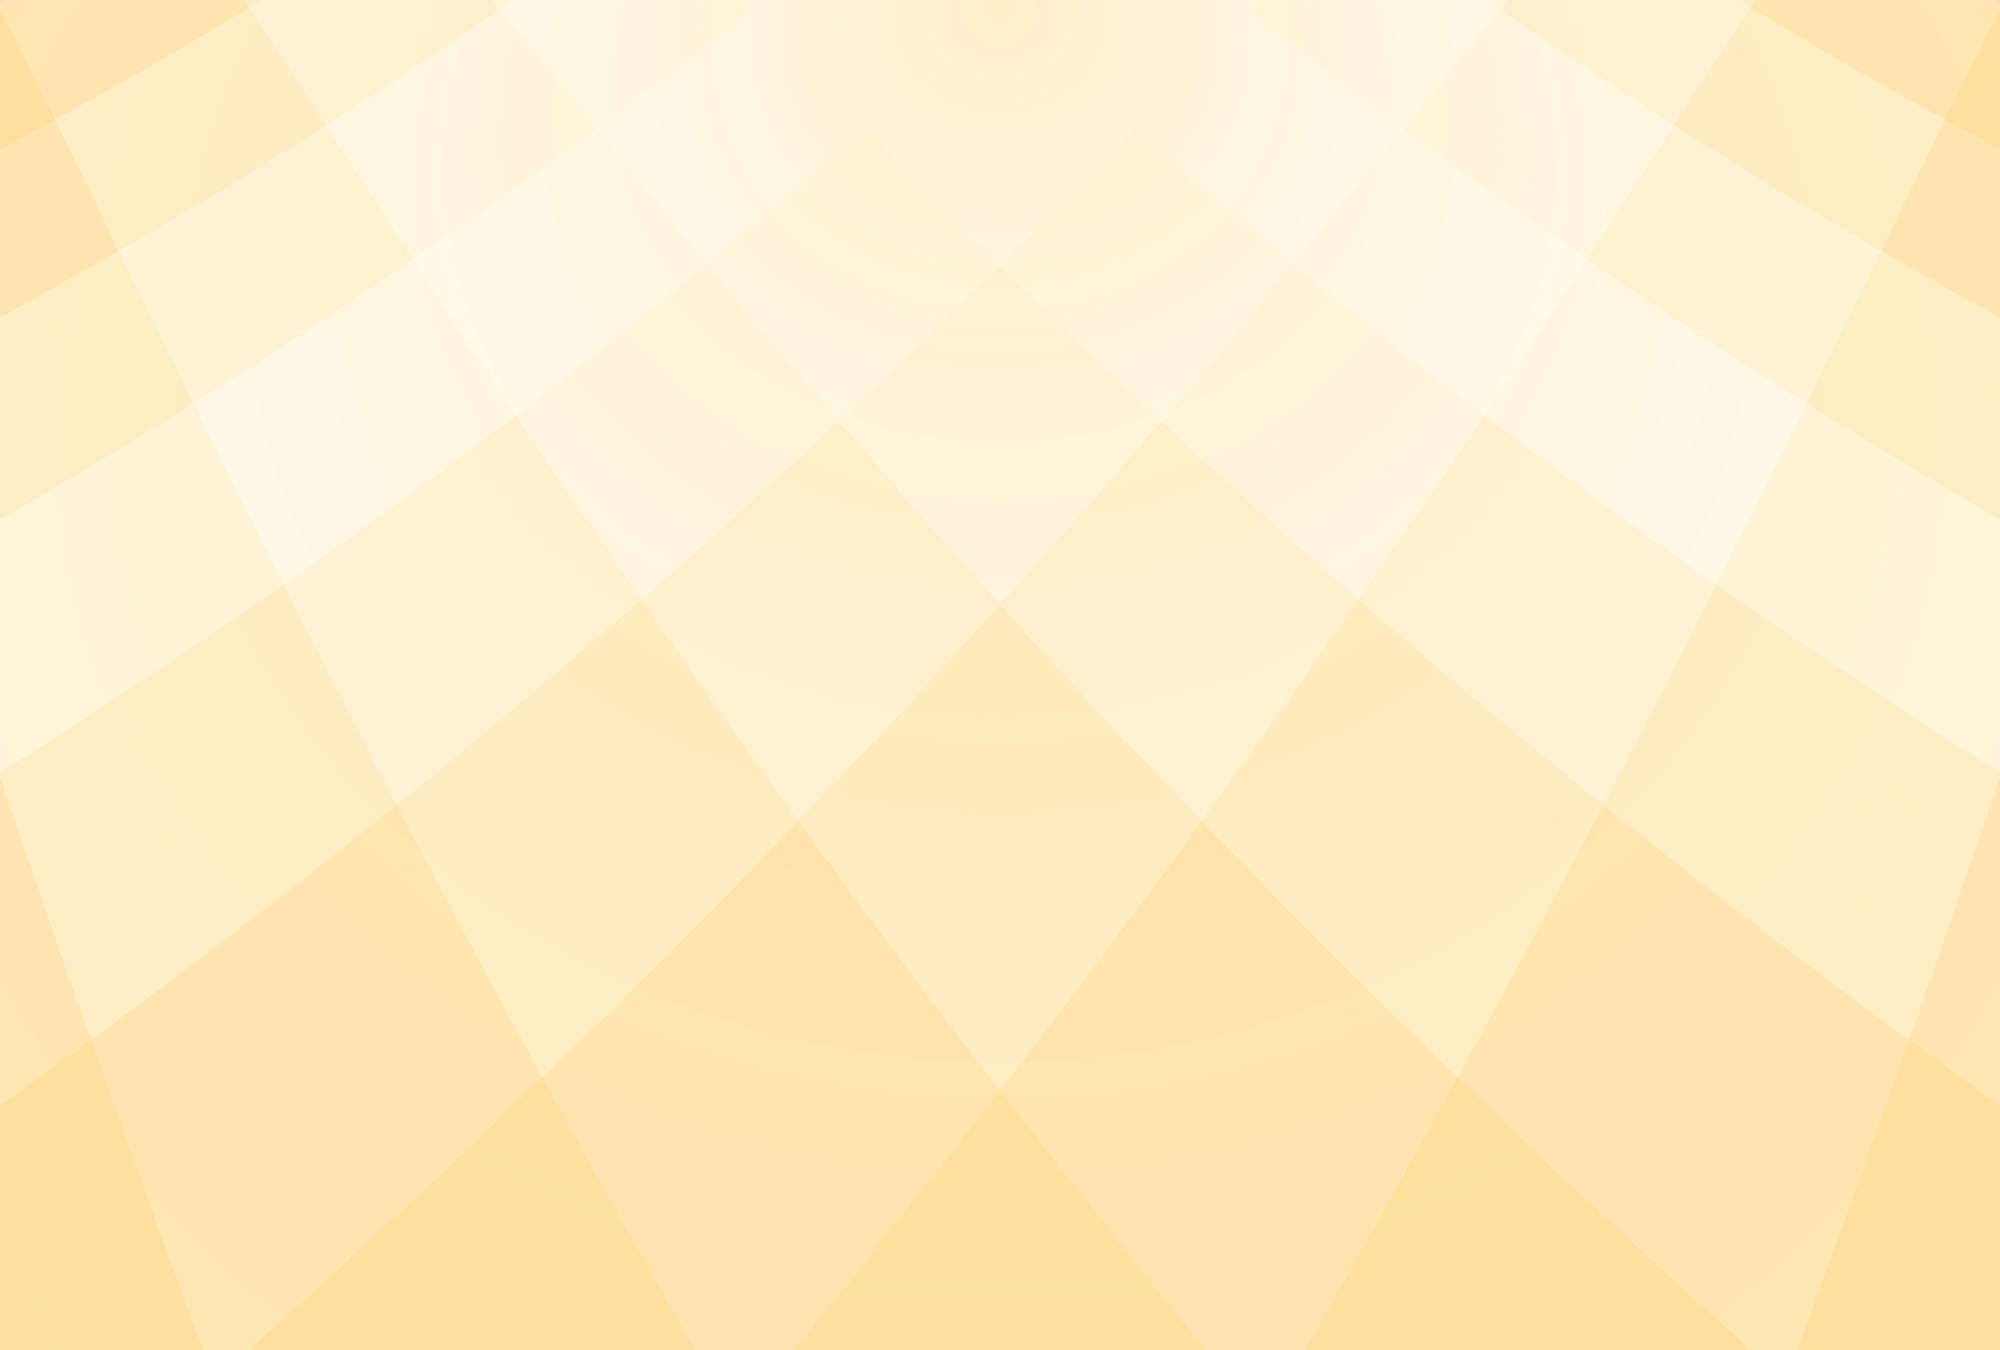             Gouden facetten in zonnig geel behangpapier
        